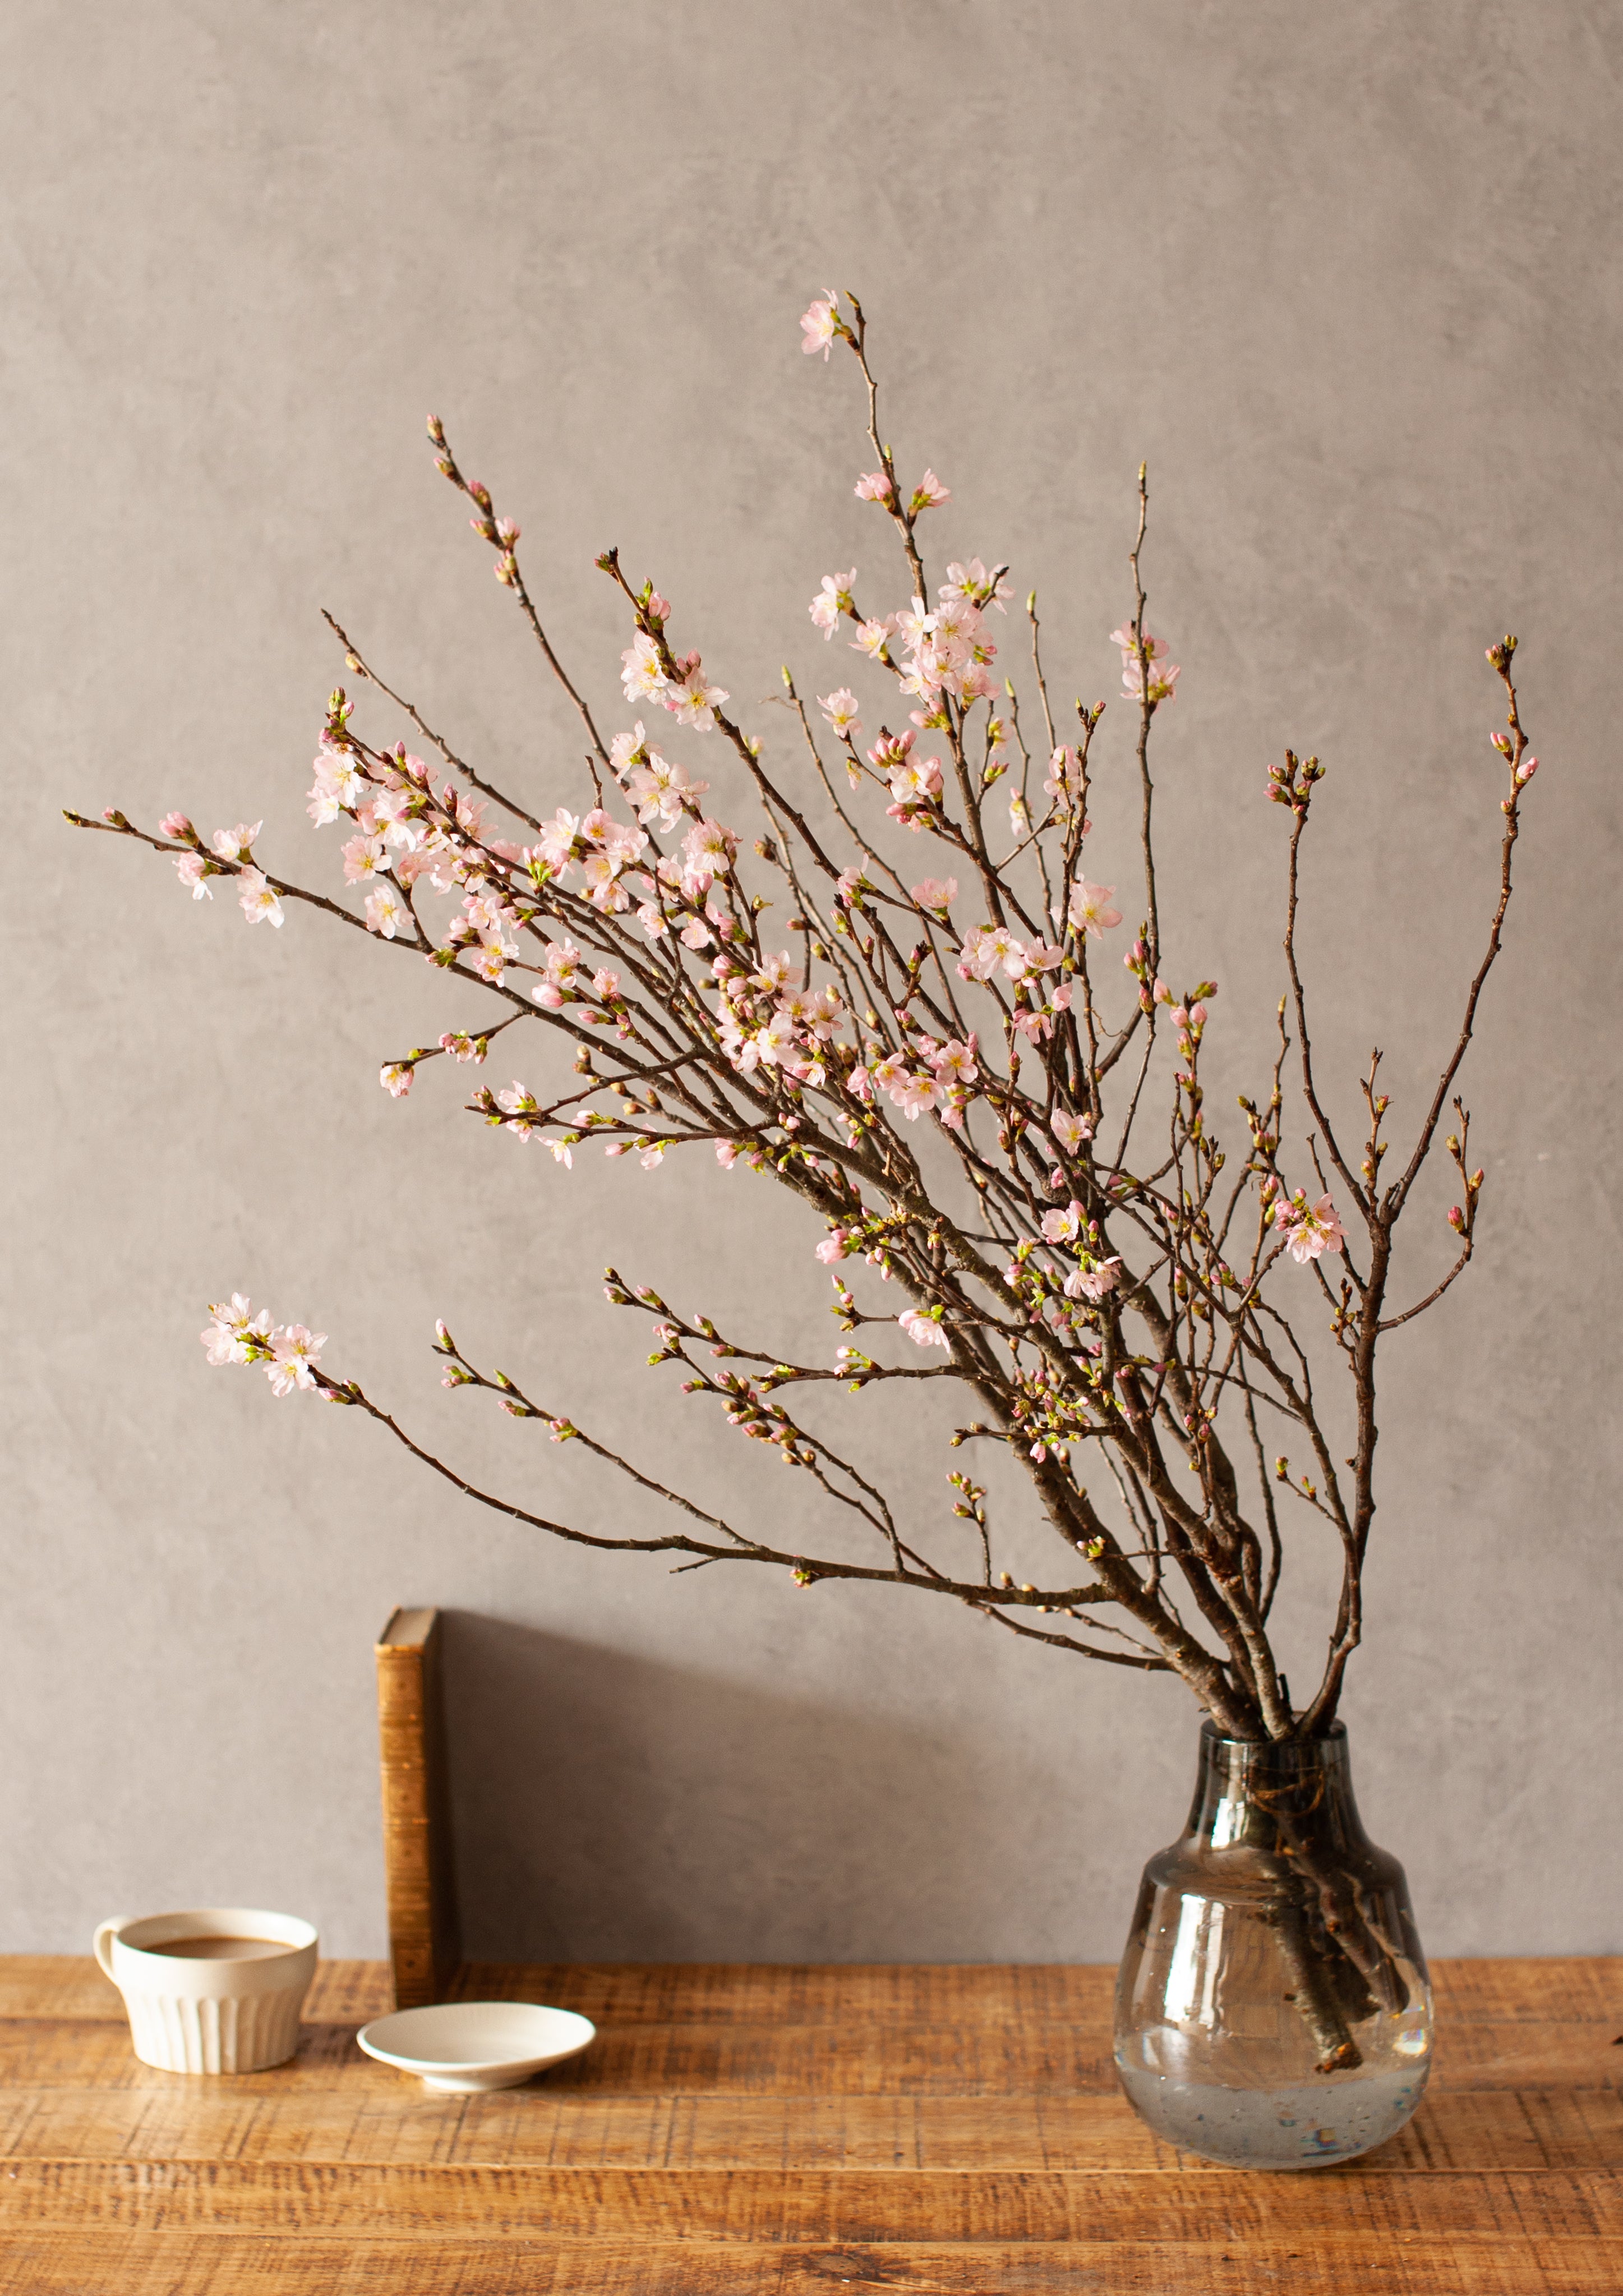 限定激安ヘレンド 鳥 置物 桜の花の枝 ヘレンド